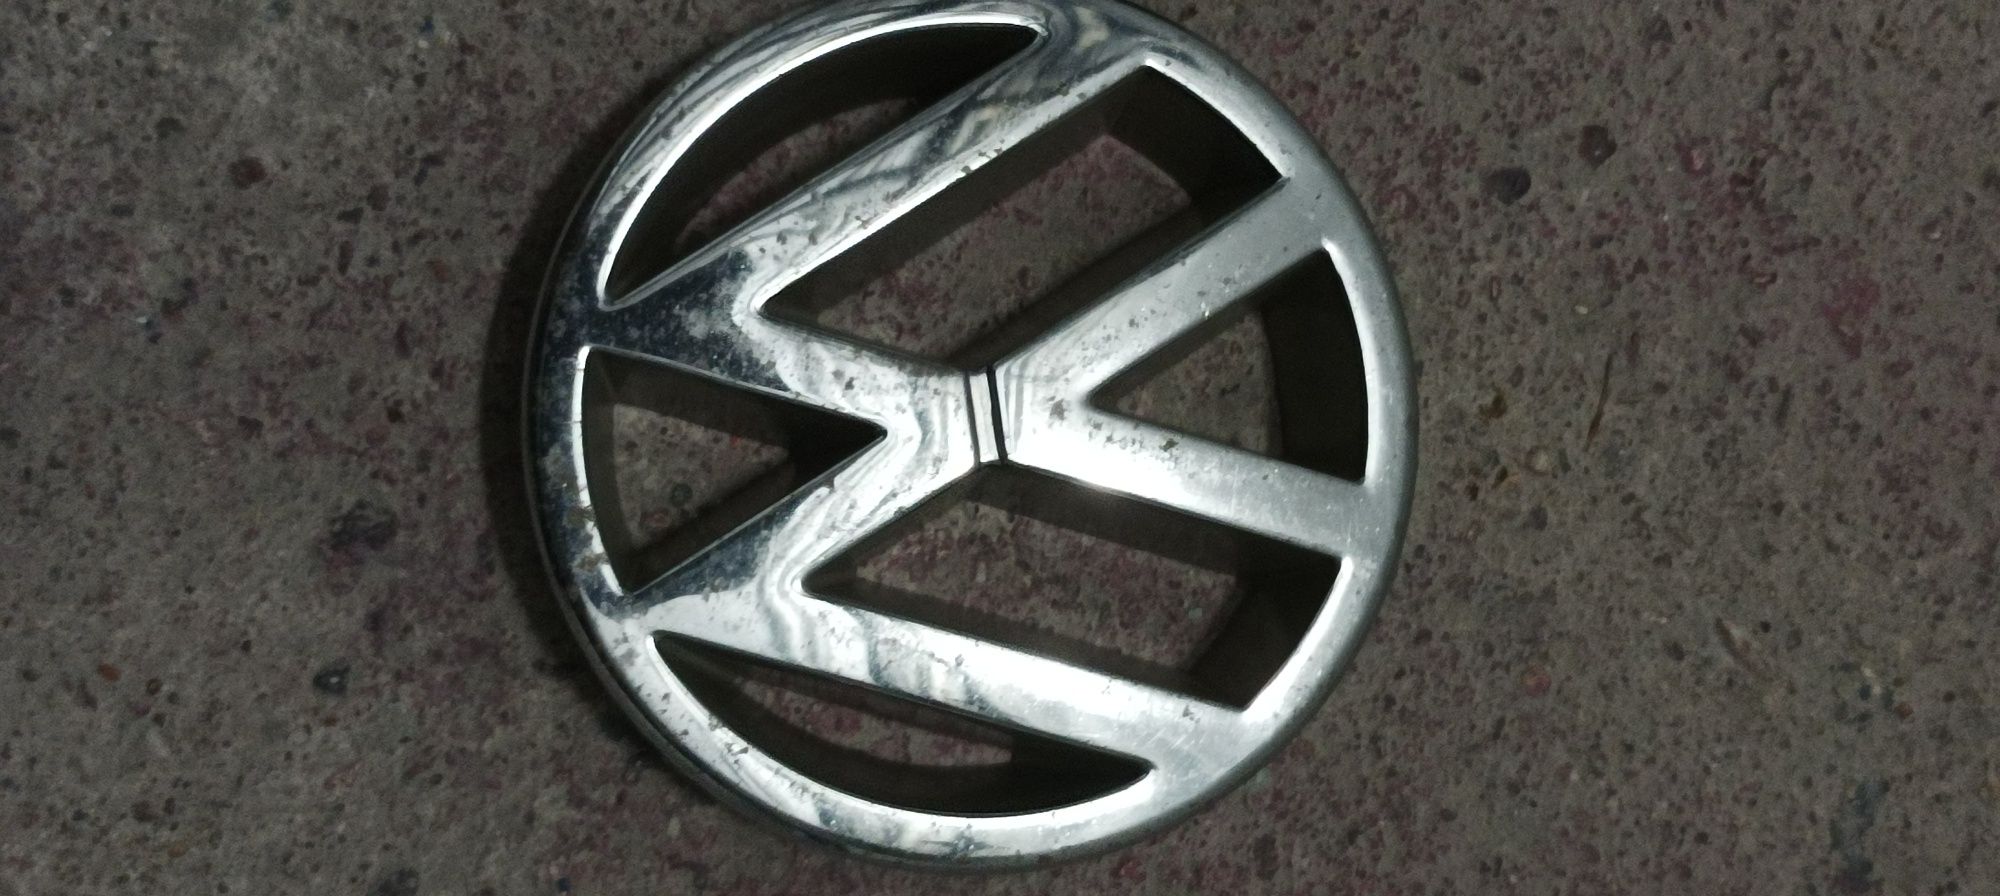 Znaczek , emblemat VW